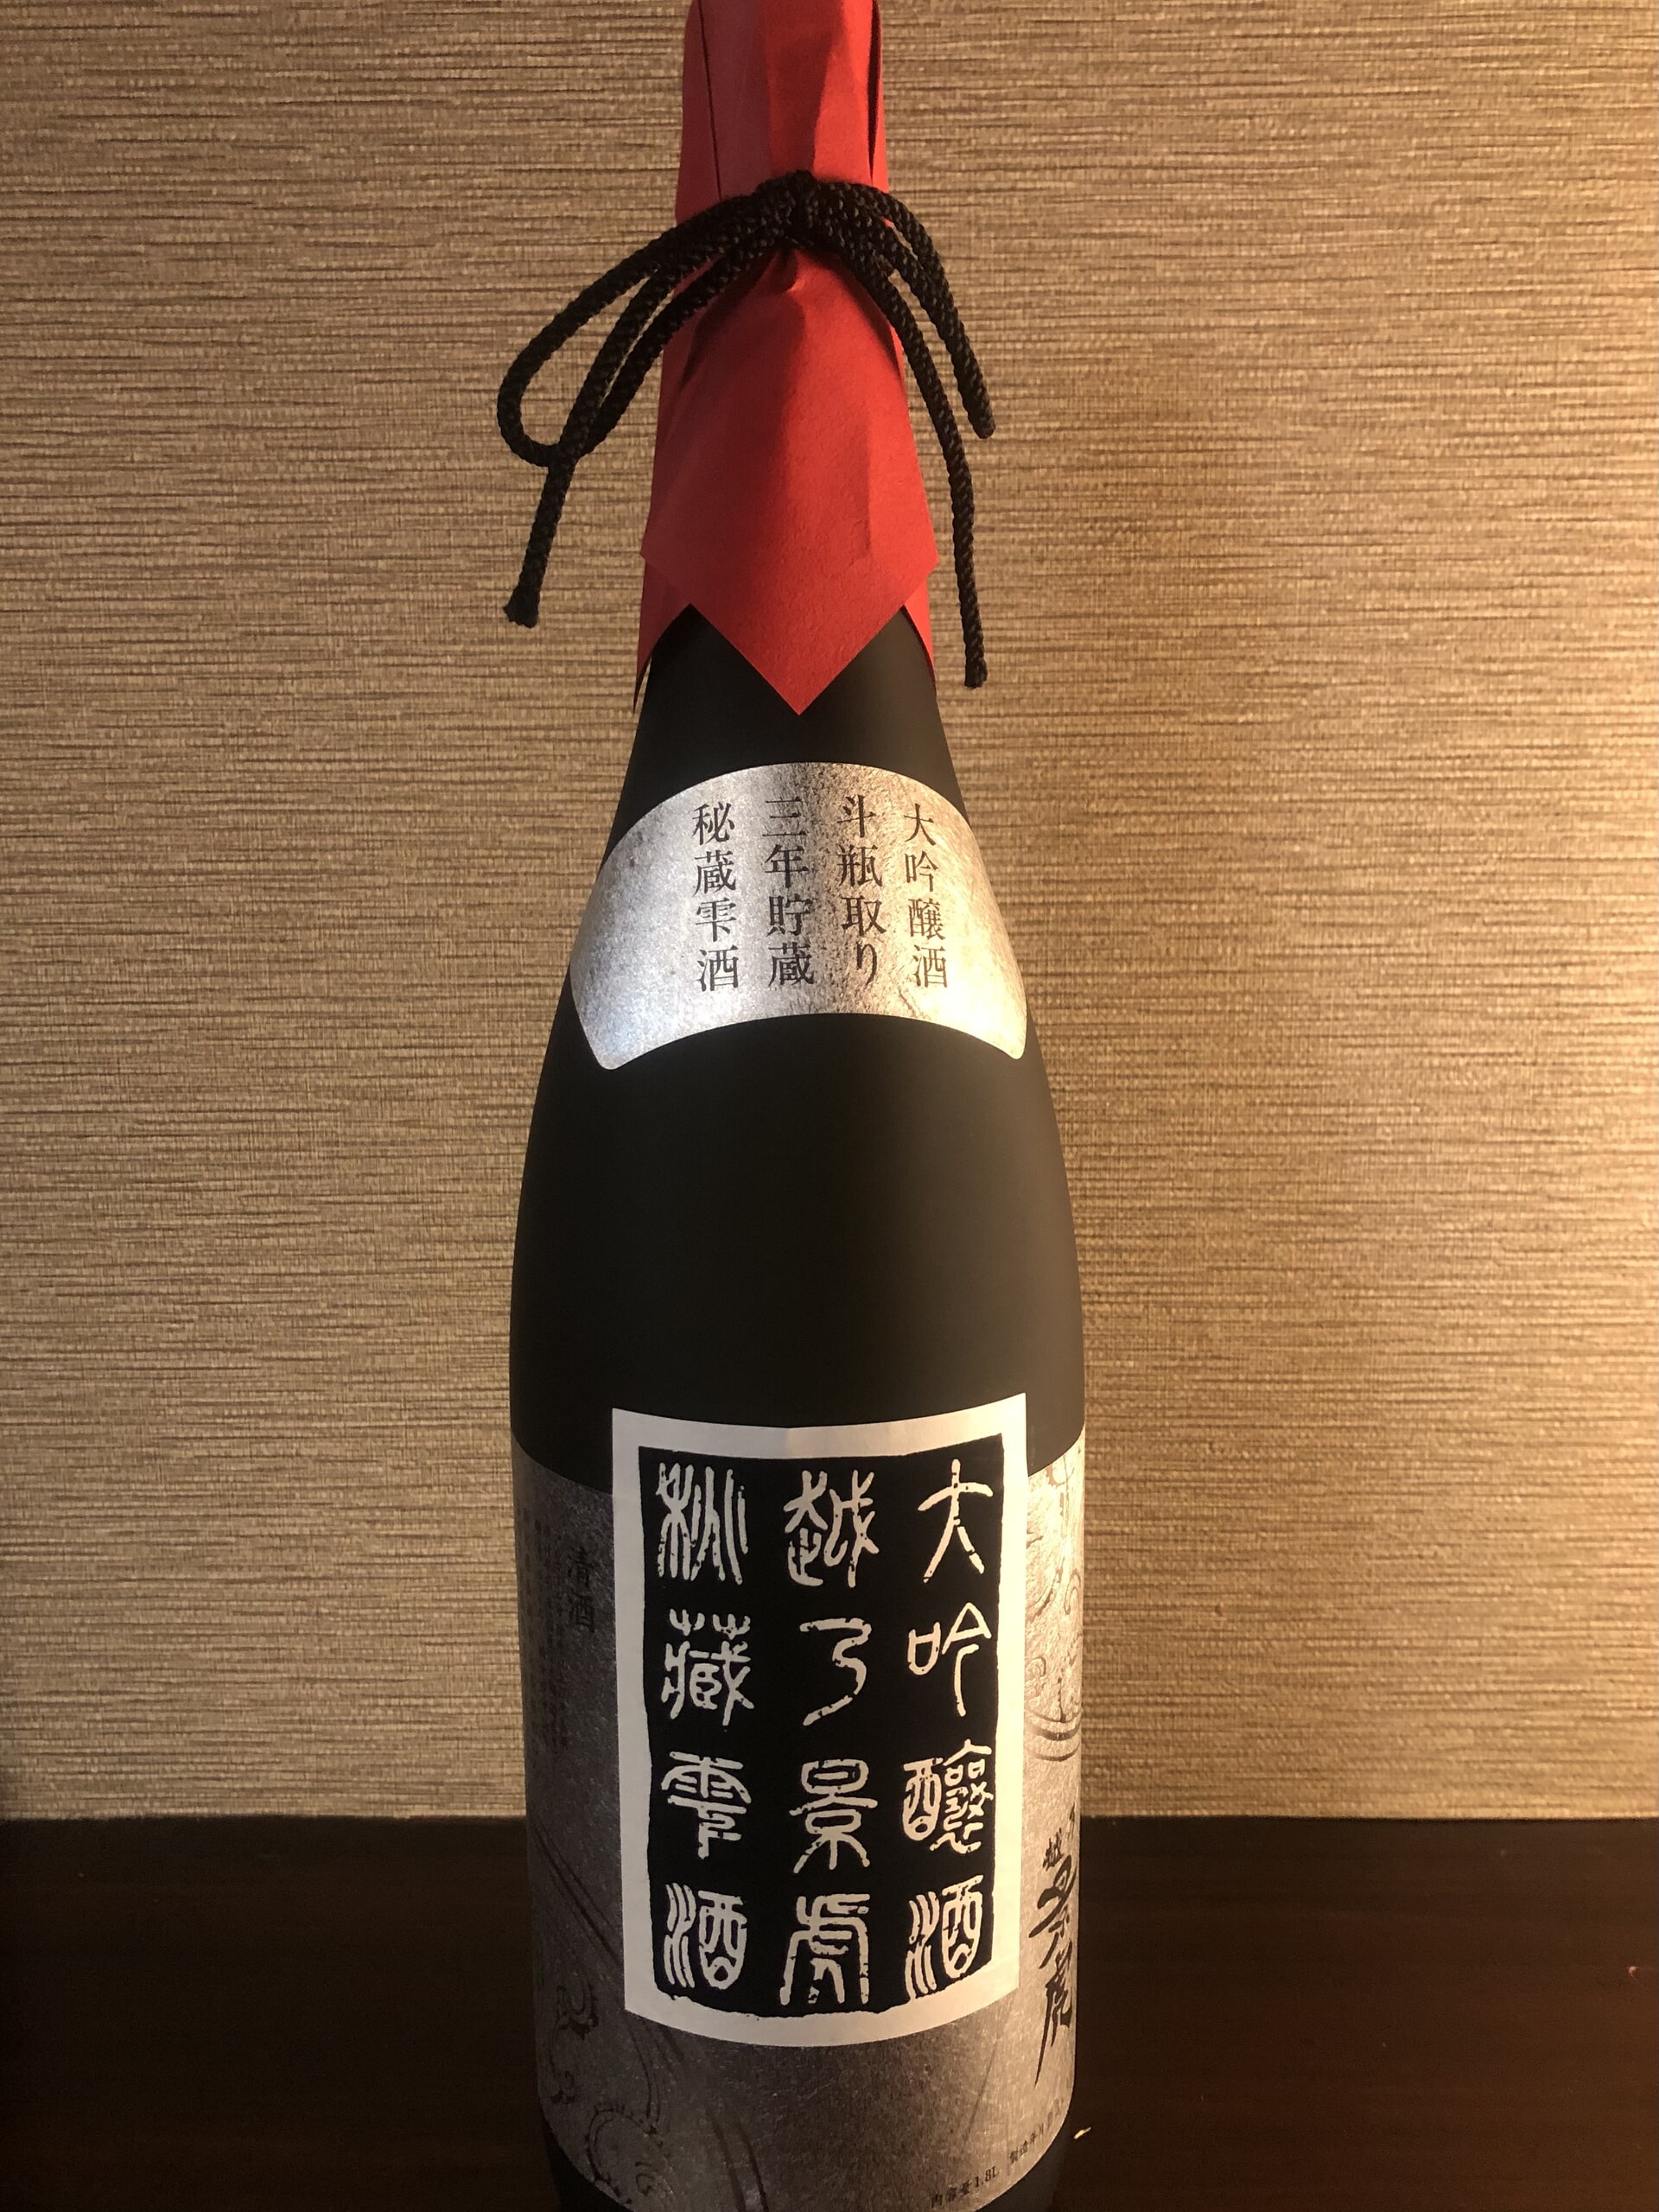 日本酒の入荷情報「越乃景虎 秘蔵酒 大吟醸雫酒」 | 素材と向き合った